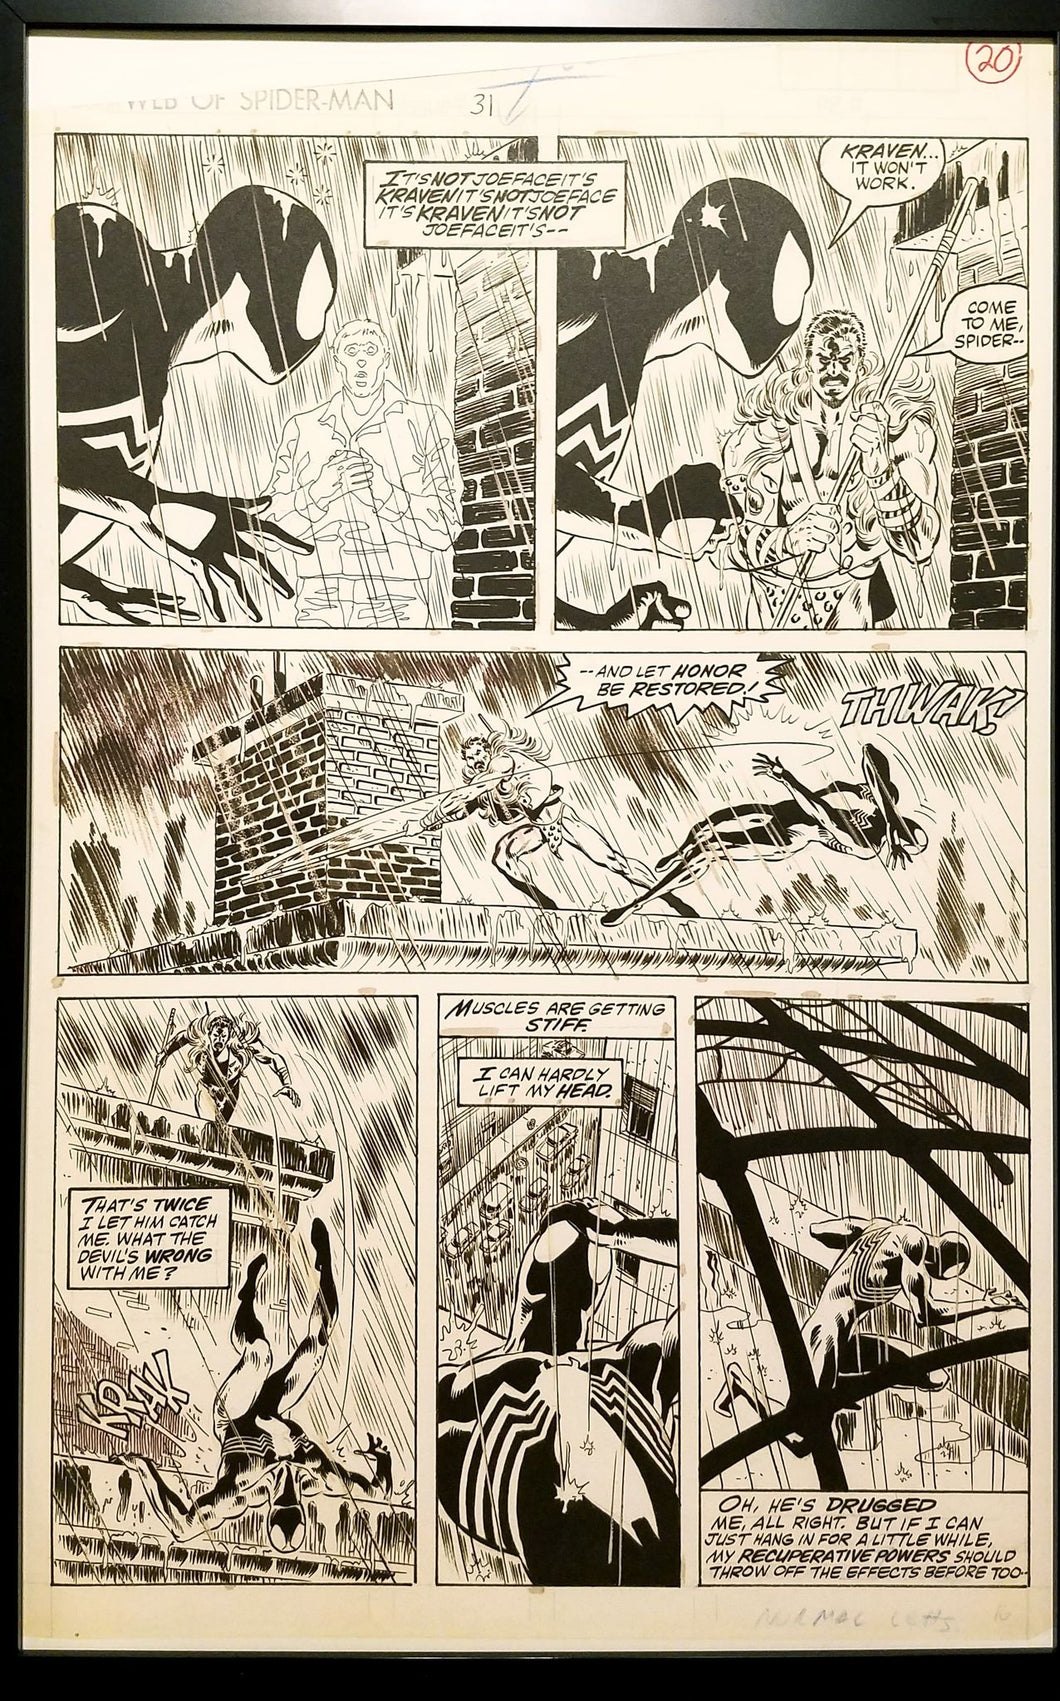 Web Spider-Man #31: Kraven's Last Hunt Mike Zeck 11x17 FRAMED Original Art Poster Marvel